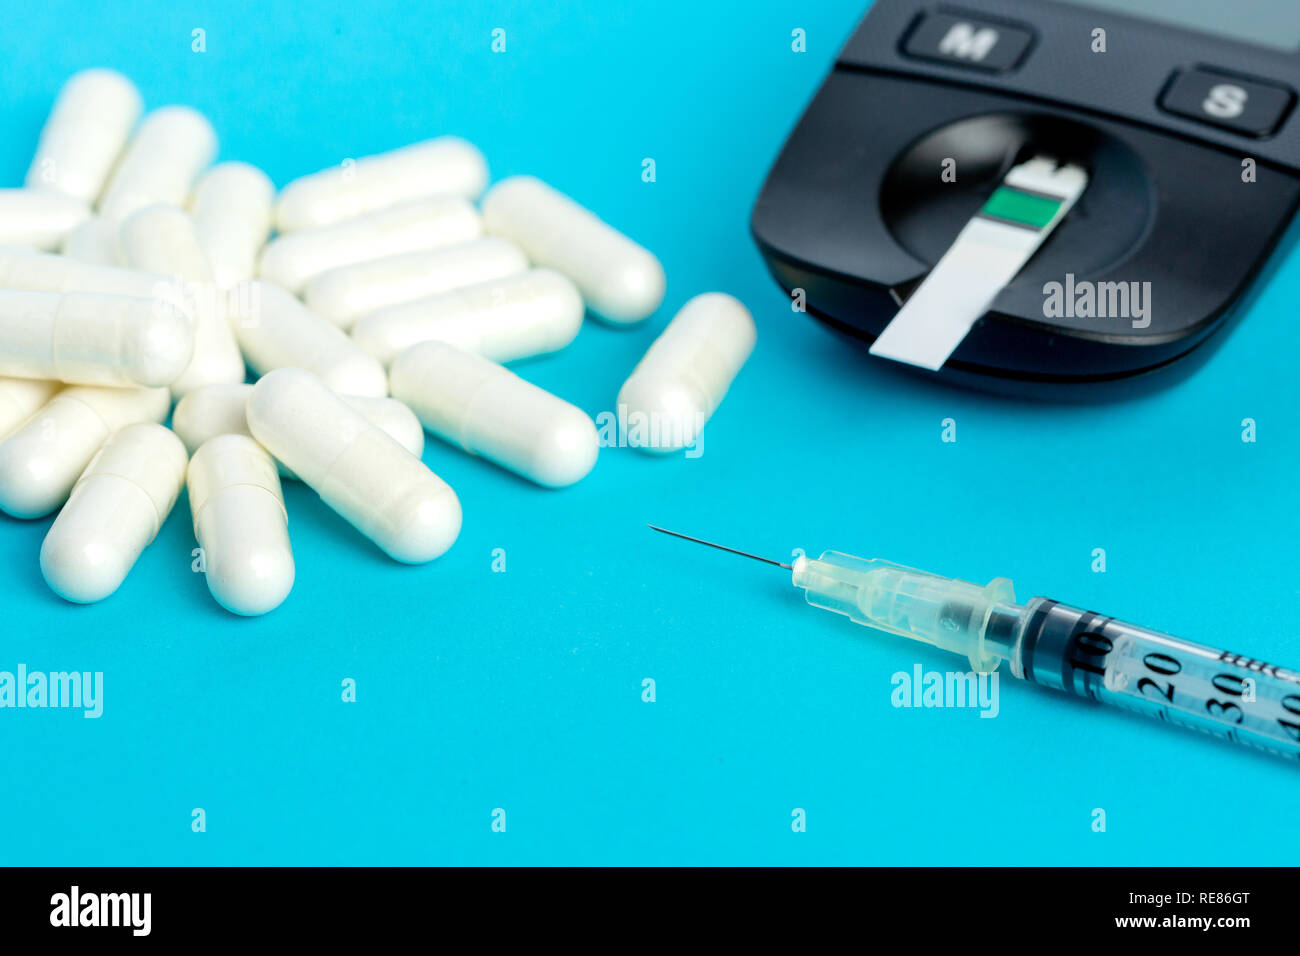 Glucometer, medication, syringe lie on a blue background. Stock Photo